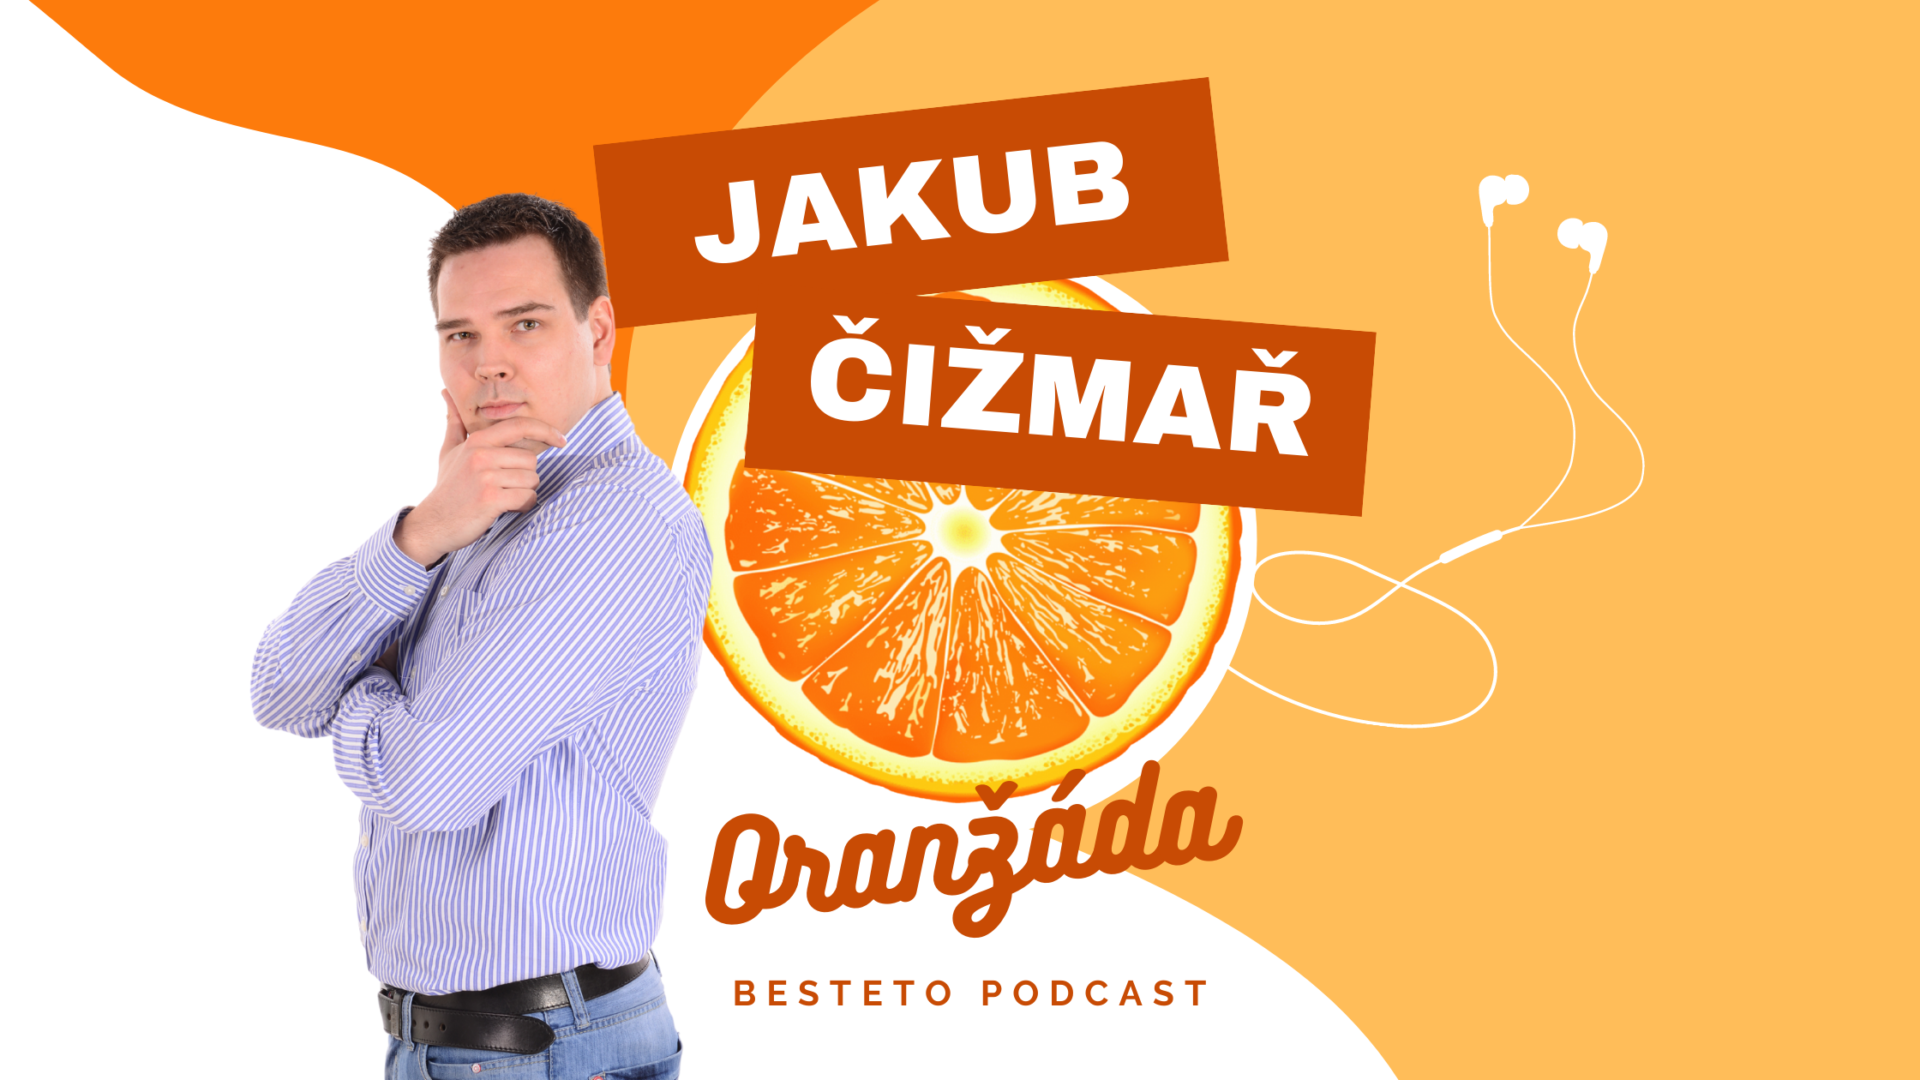 Oranzada podcast s Jakube Cizmarem